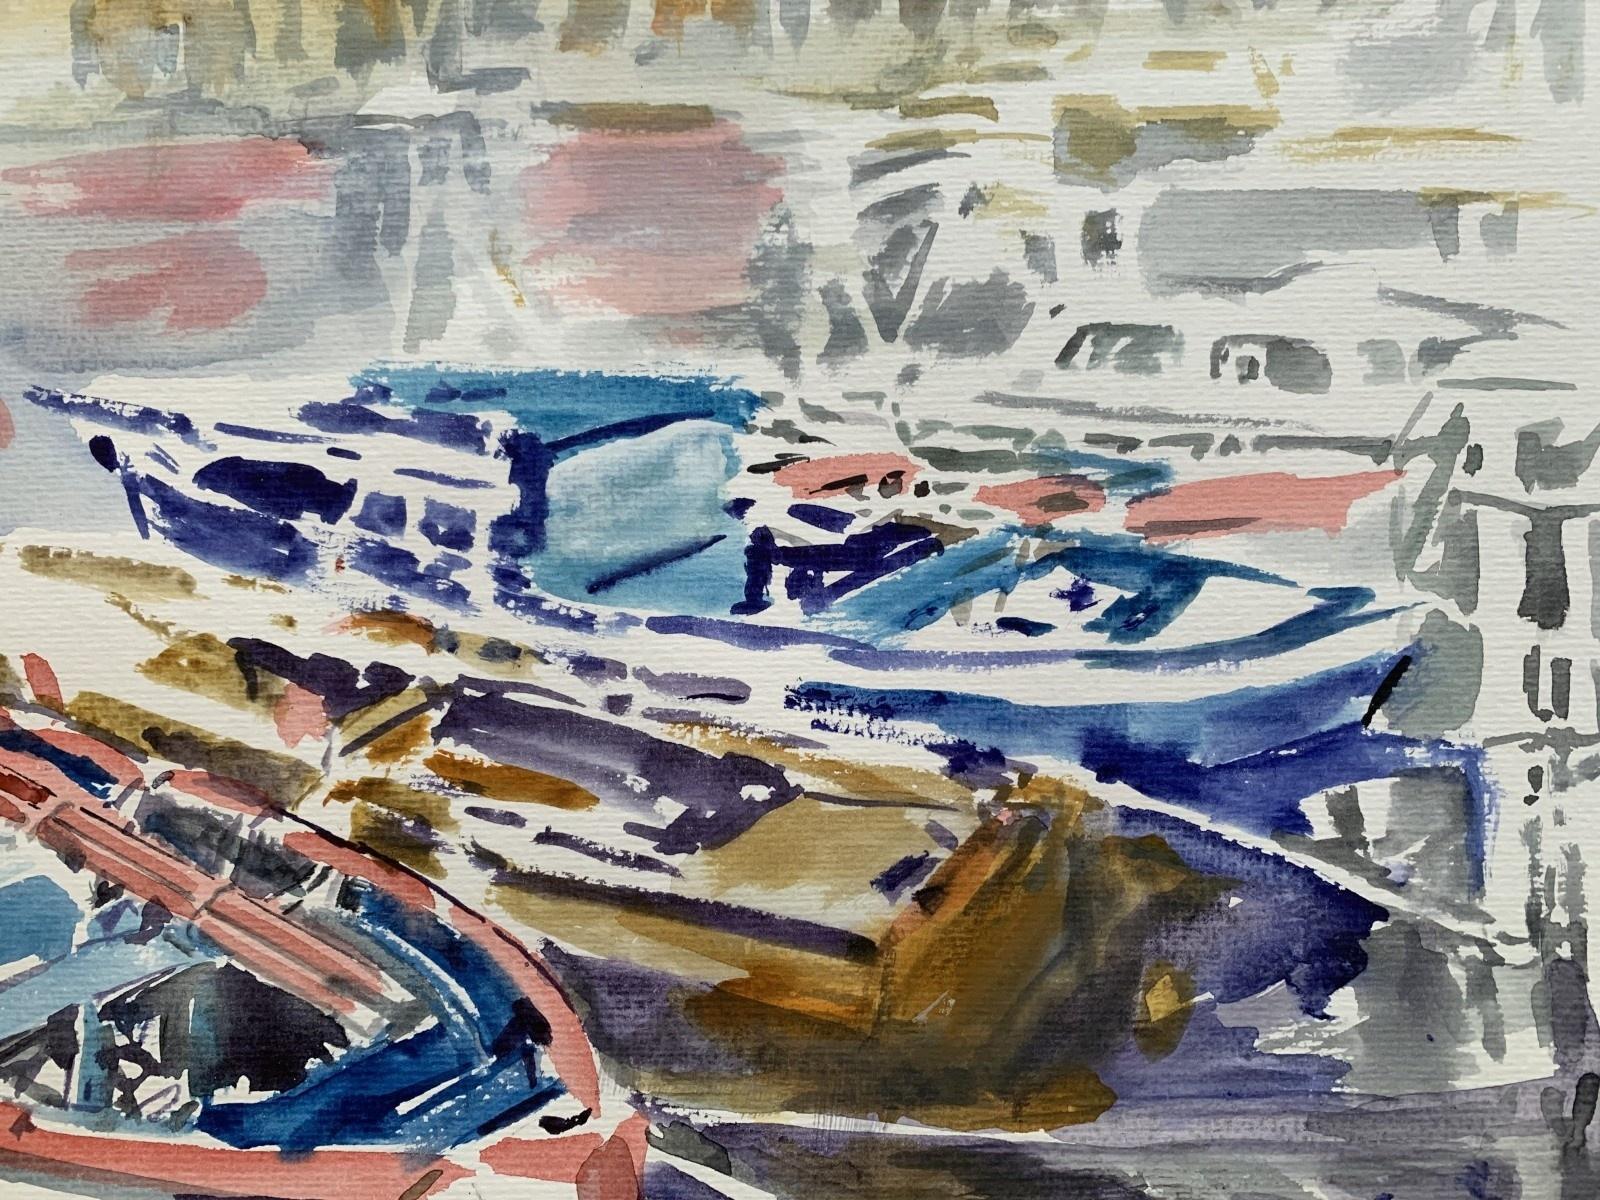 Zeitgenössische Aquarellmalerei auf Papier des polnischen Künstlers Wlodzimierz Karczmarzyk. Marinemalerei mit Darstellung von Booten auf einem Gewässer. Der Stil des Werks ist skizzenhaft und gleichzeitig realistisch.

WŁODZIMIERZ KARCZMARZYK (geb.